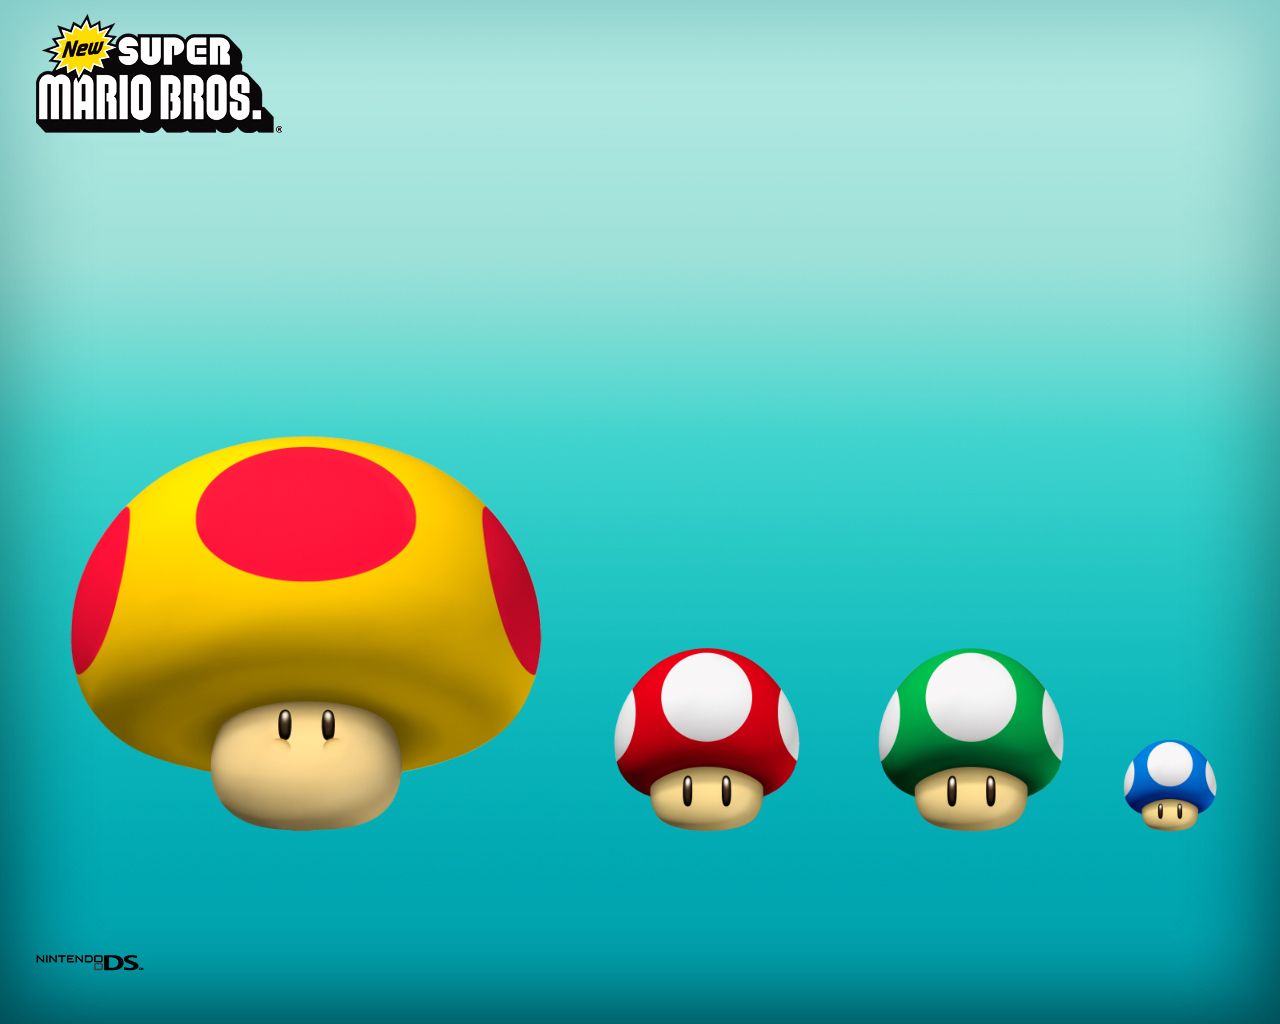 New Super Mario Brothers Wallpaper - Super Mario Bros. Wallpaper ...